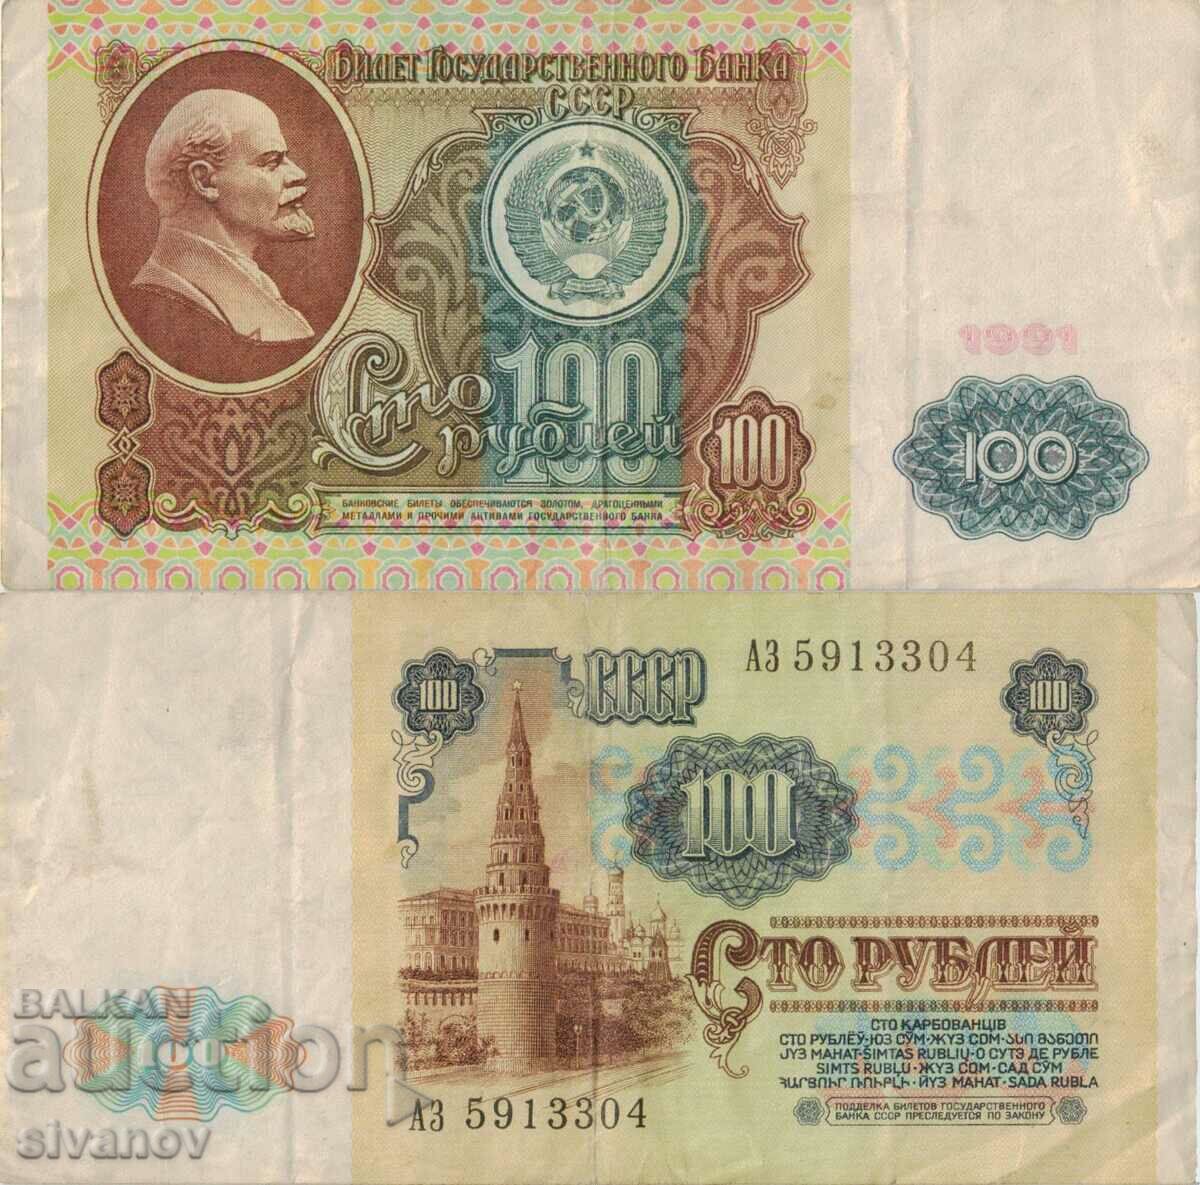 Uniunea Sovietică Rusia URSS 10 ruble 1991 bancnota #5352